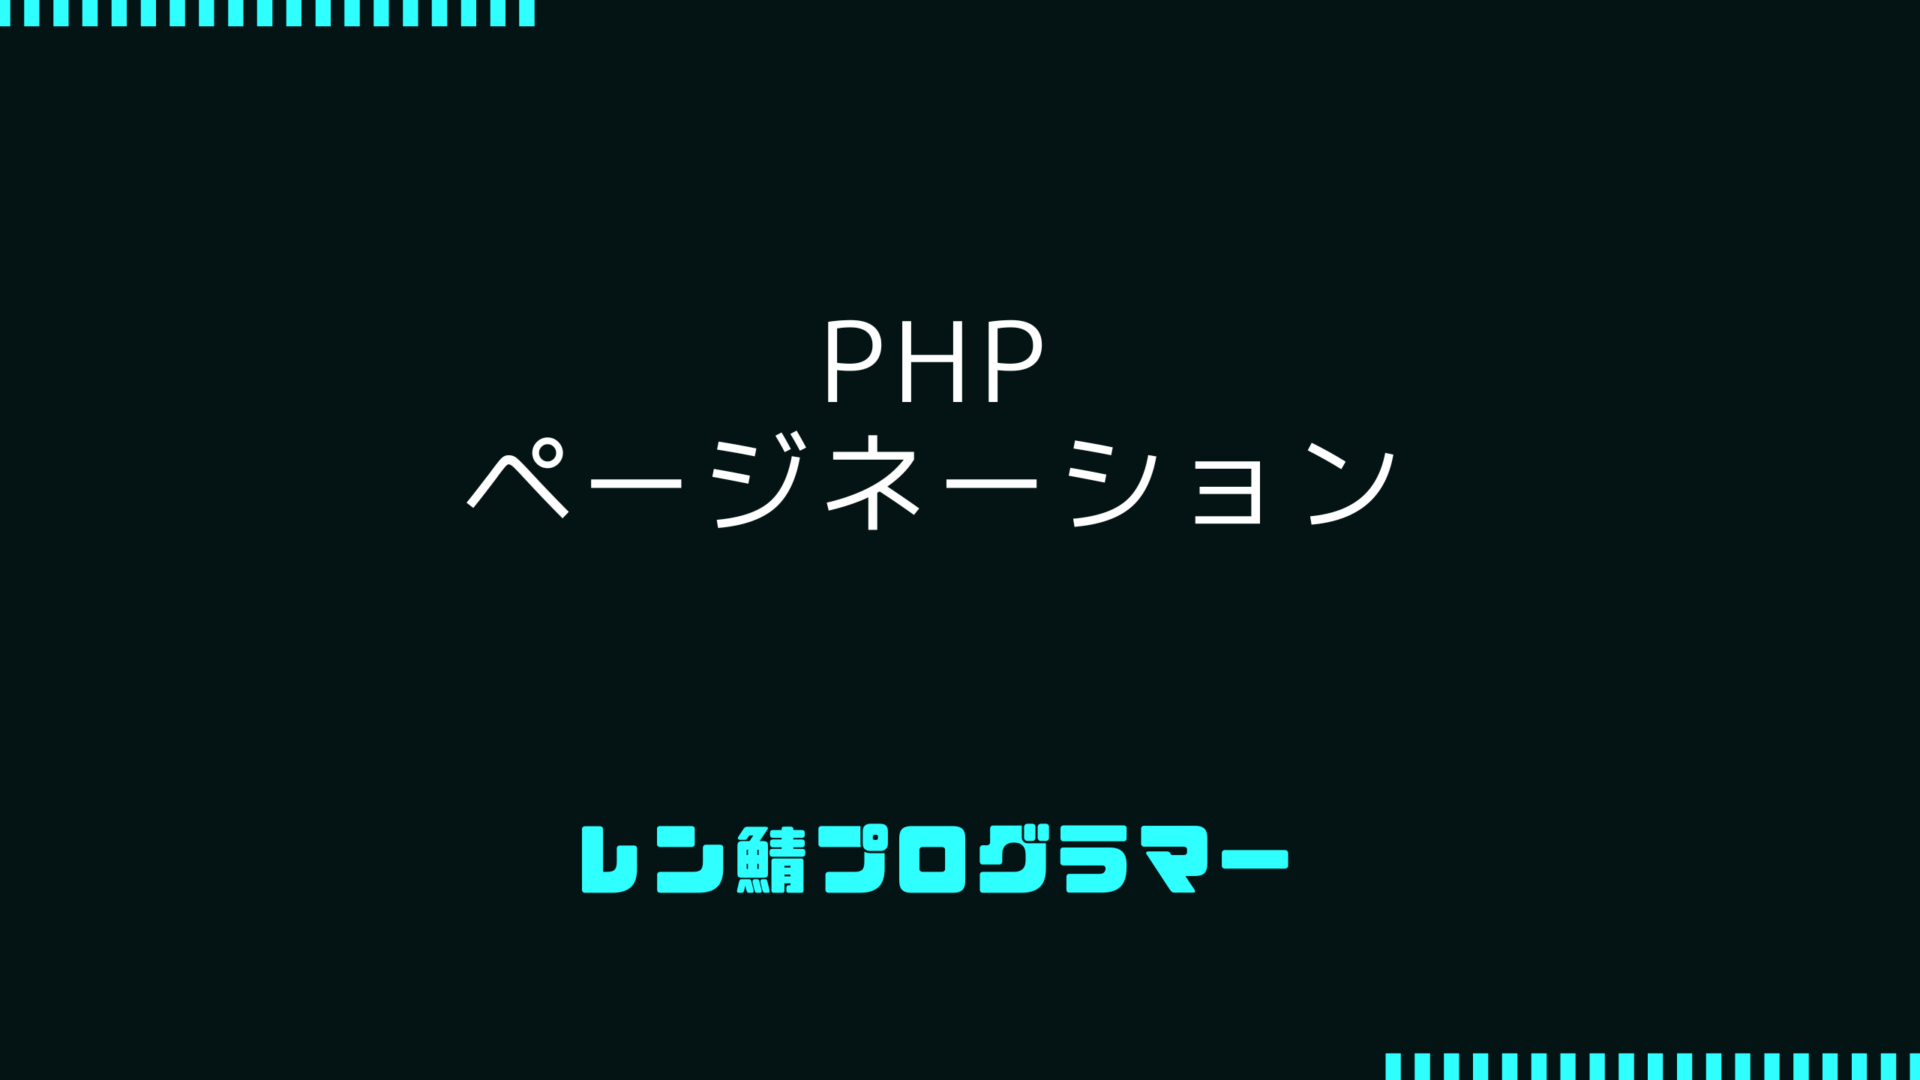 PHPページネーションの実装方法 | サンプルコードを紹介